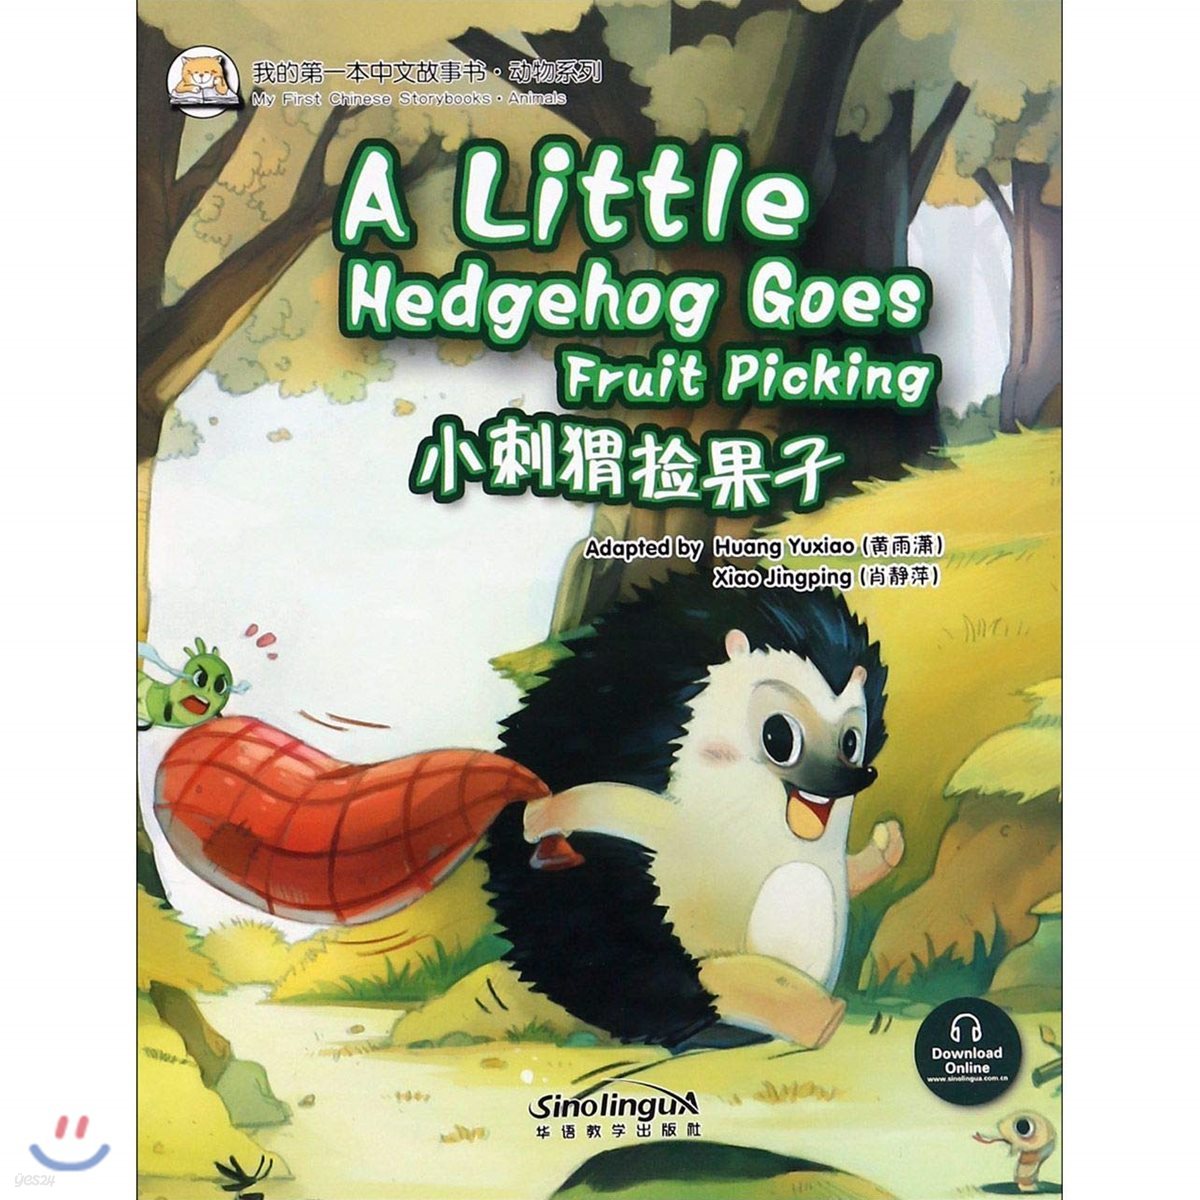 我的第一本中文故事?·?物系列 : 小刺??果子 아적제일본중문고사서·동물계열 : 소자위검과자 My First Chinese Storybooks·Animals : A Little Goes hedghog Goes Fruit Picking